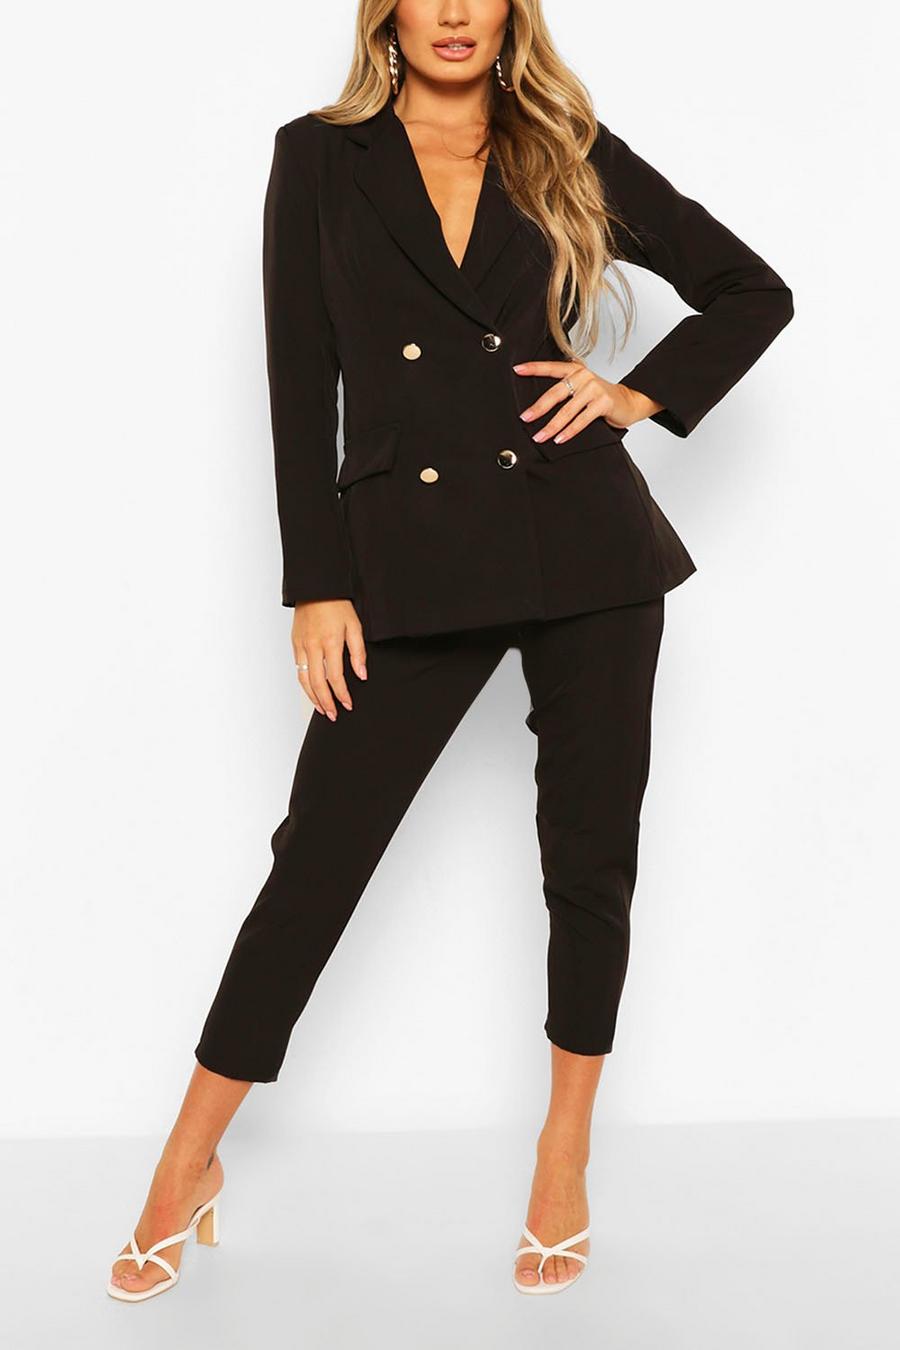 שחור סט חליפה של בלייזר עם רכיסה כפולה ומכנסיים  image number 1